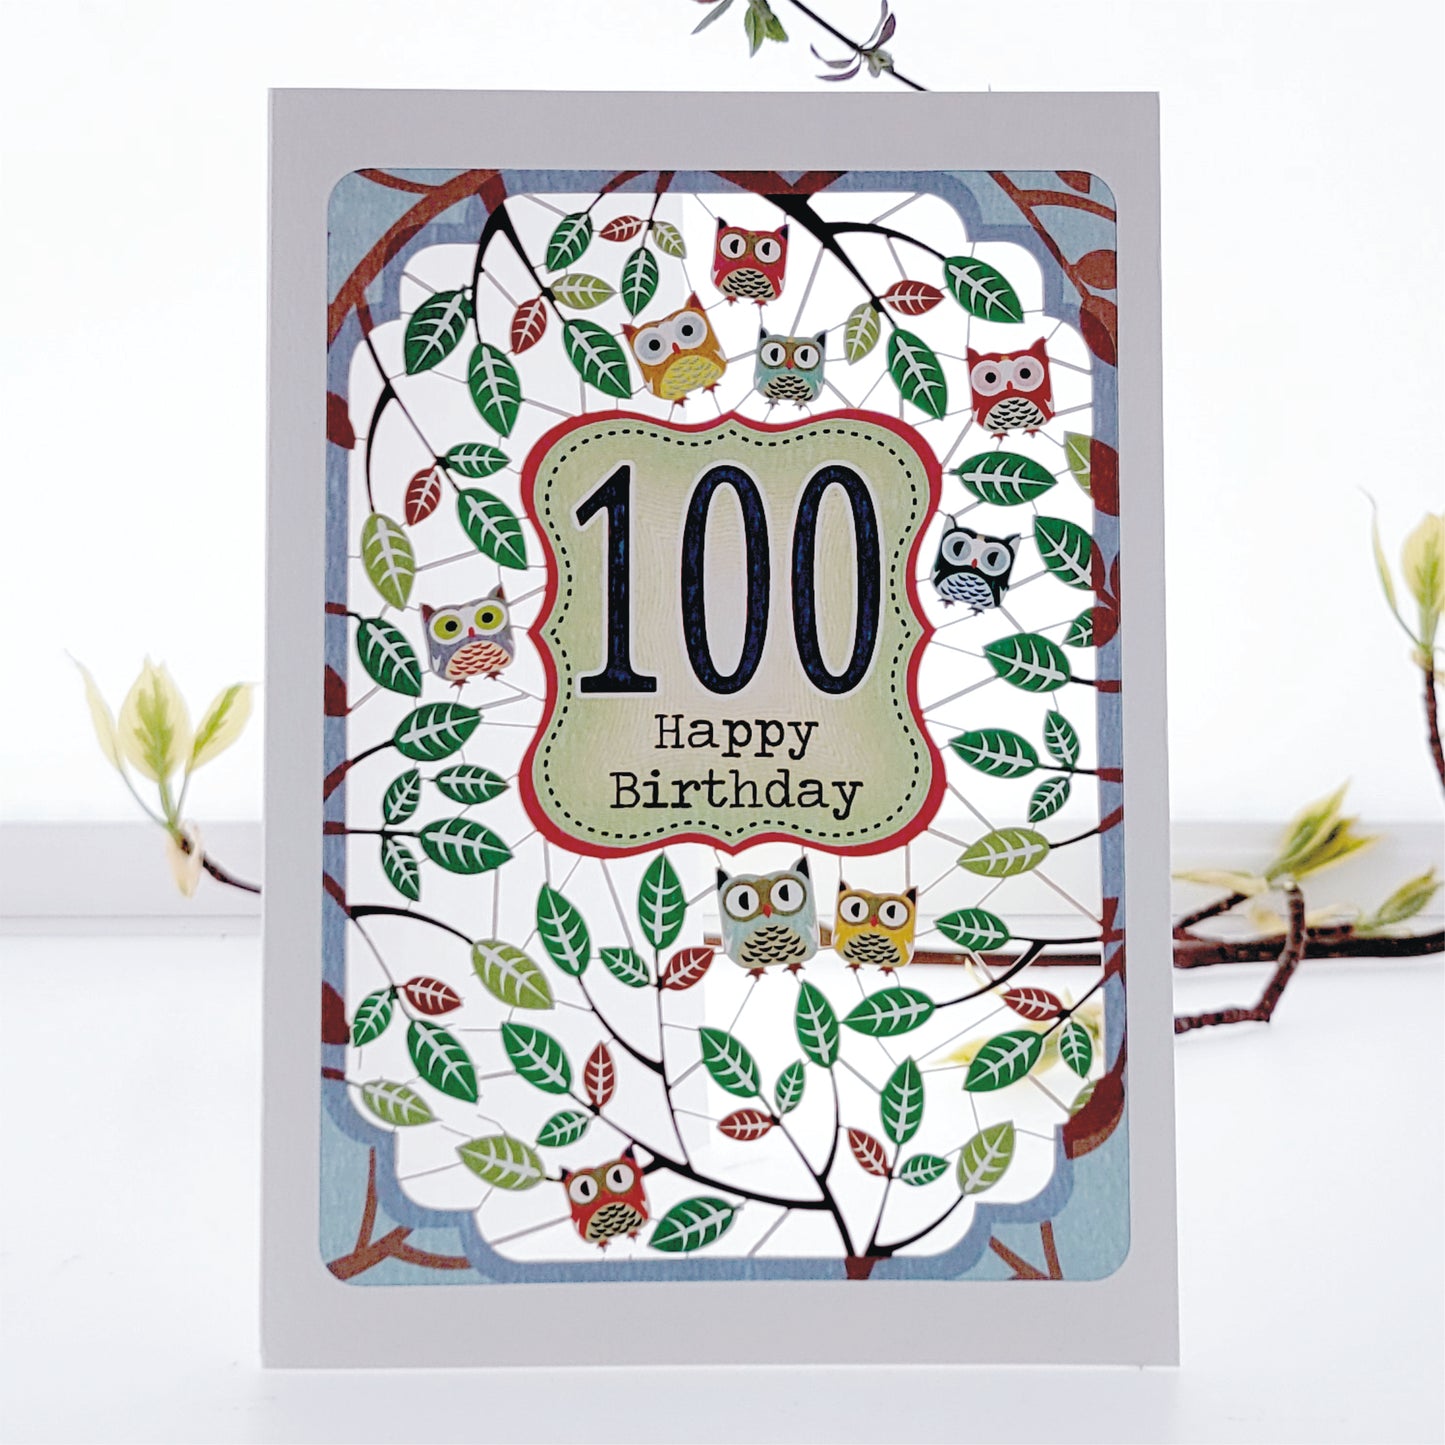 Age 100 Birthday Card, 100th Birthday Card, Owls Card - PM842